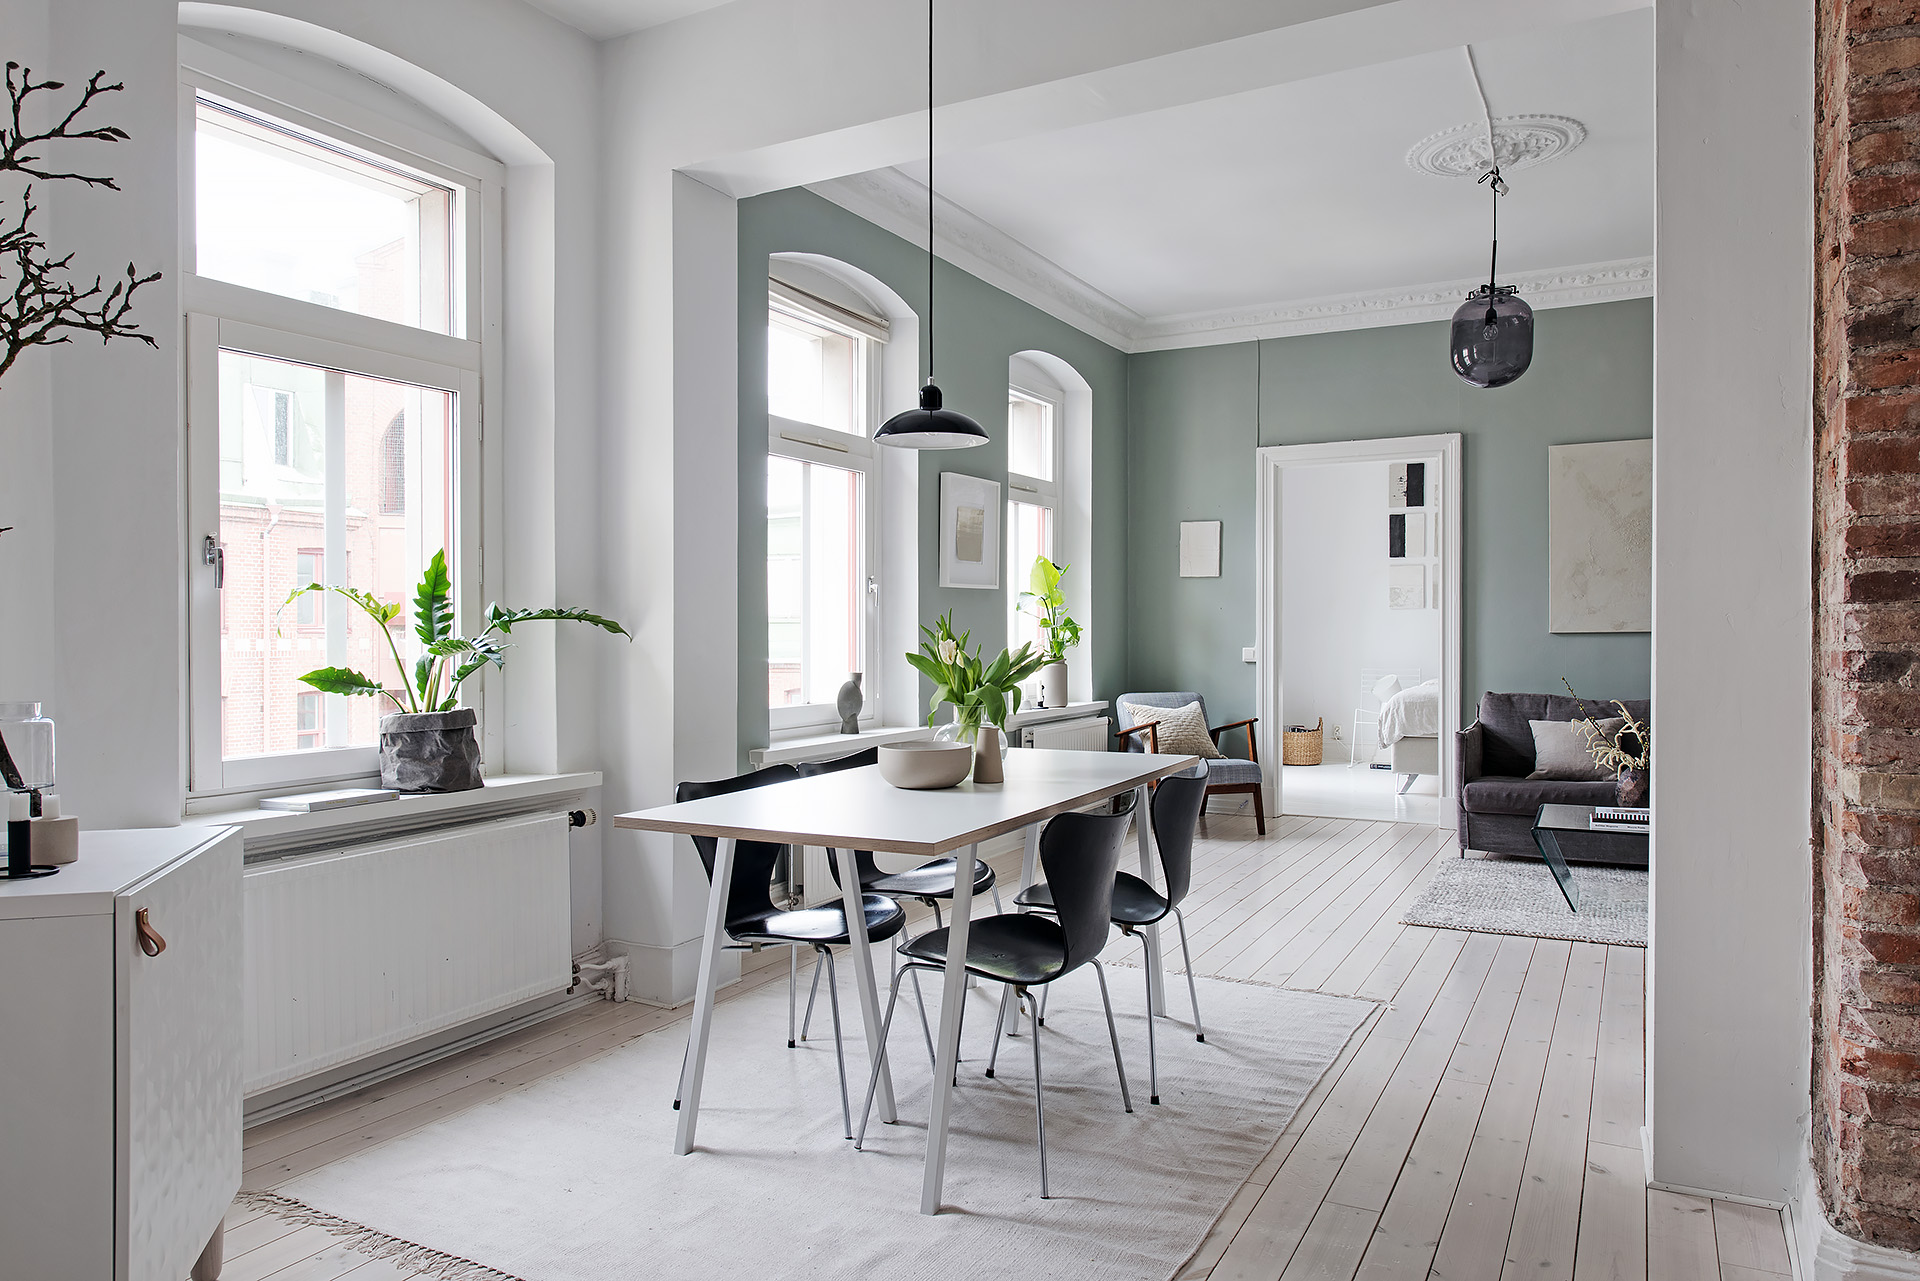 delikatissen tendencias decor mint salón mint piso sueco mint pintura mint salón estilo escandinavo decoración mint 